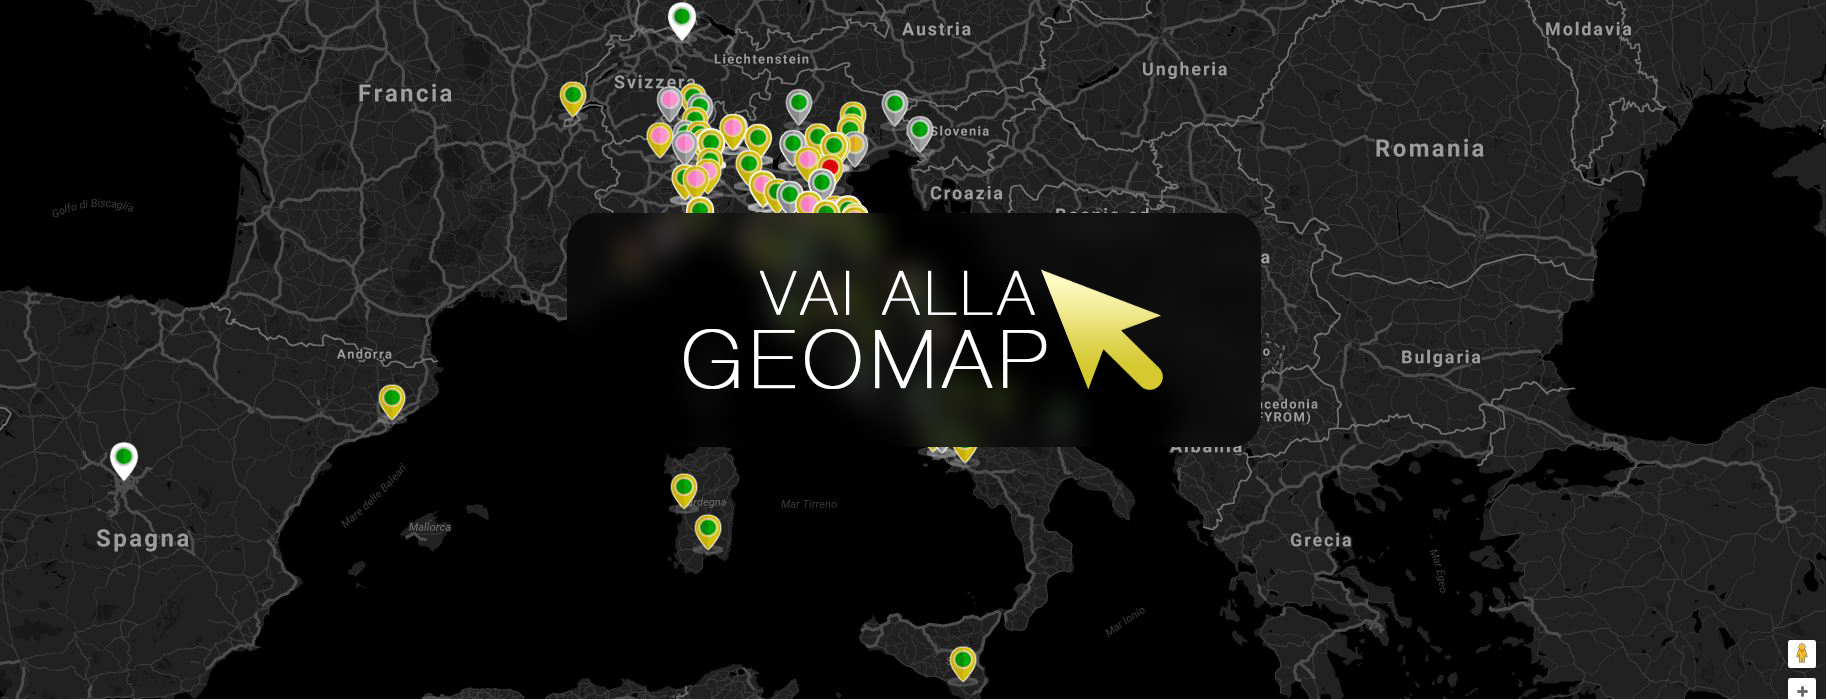 Guarda gli annunci a Venezia nella mappa intervattiva